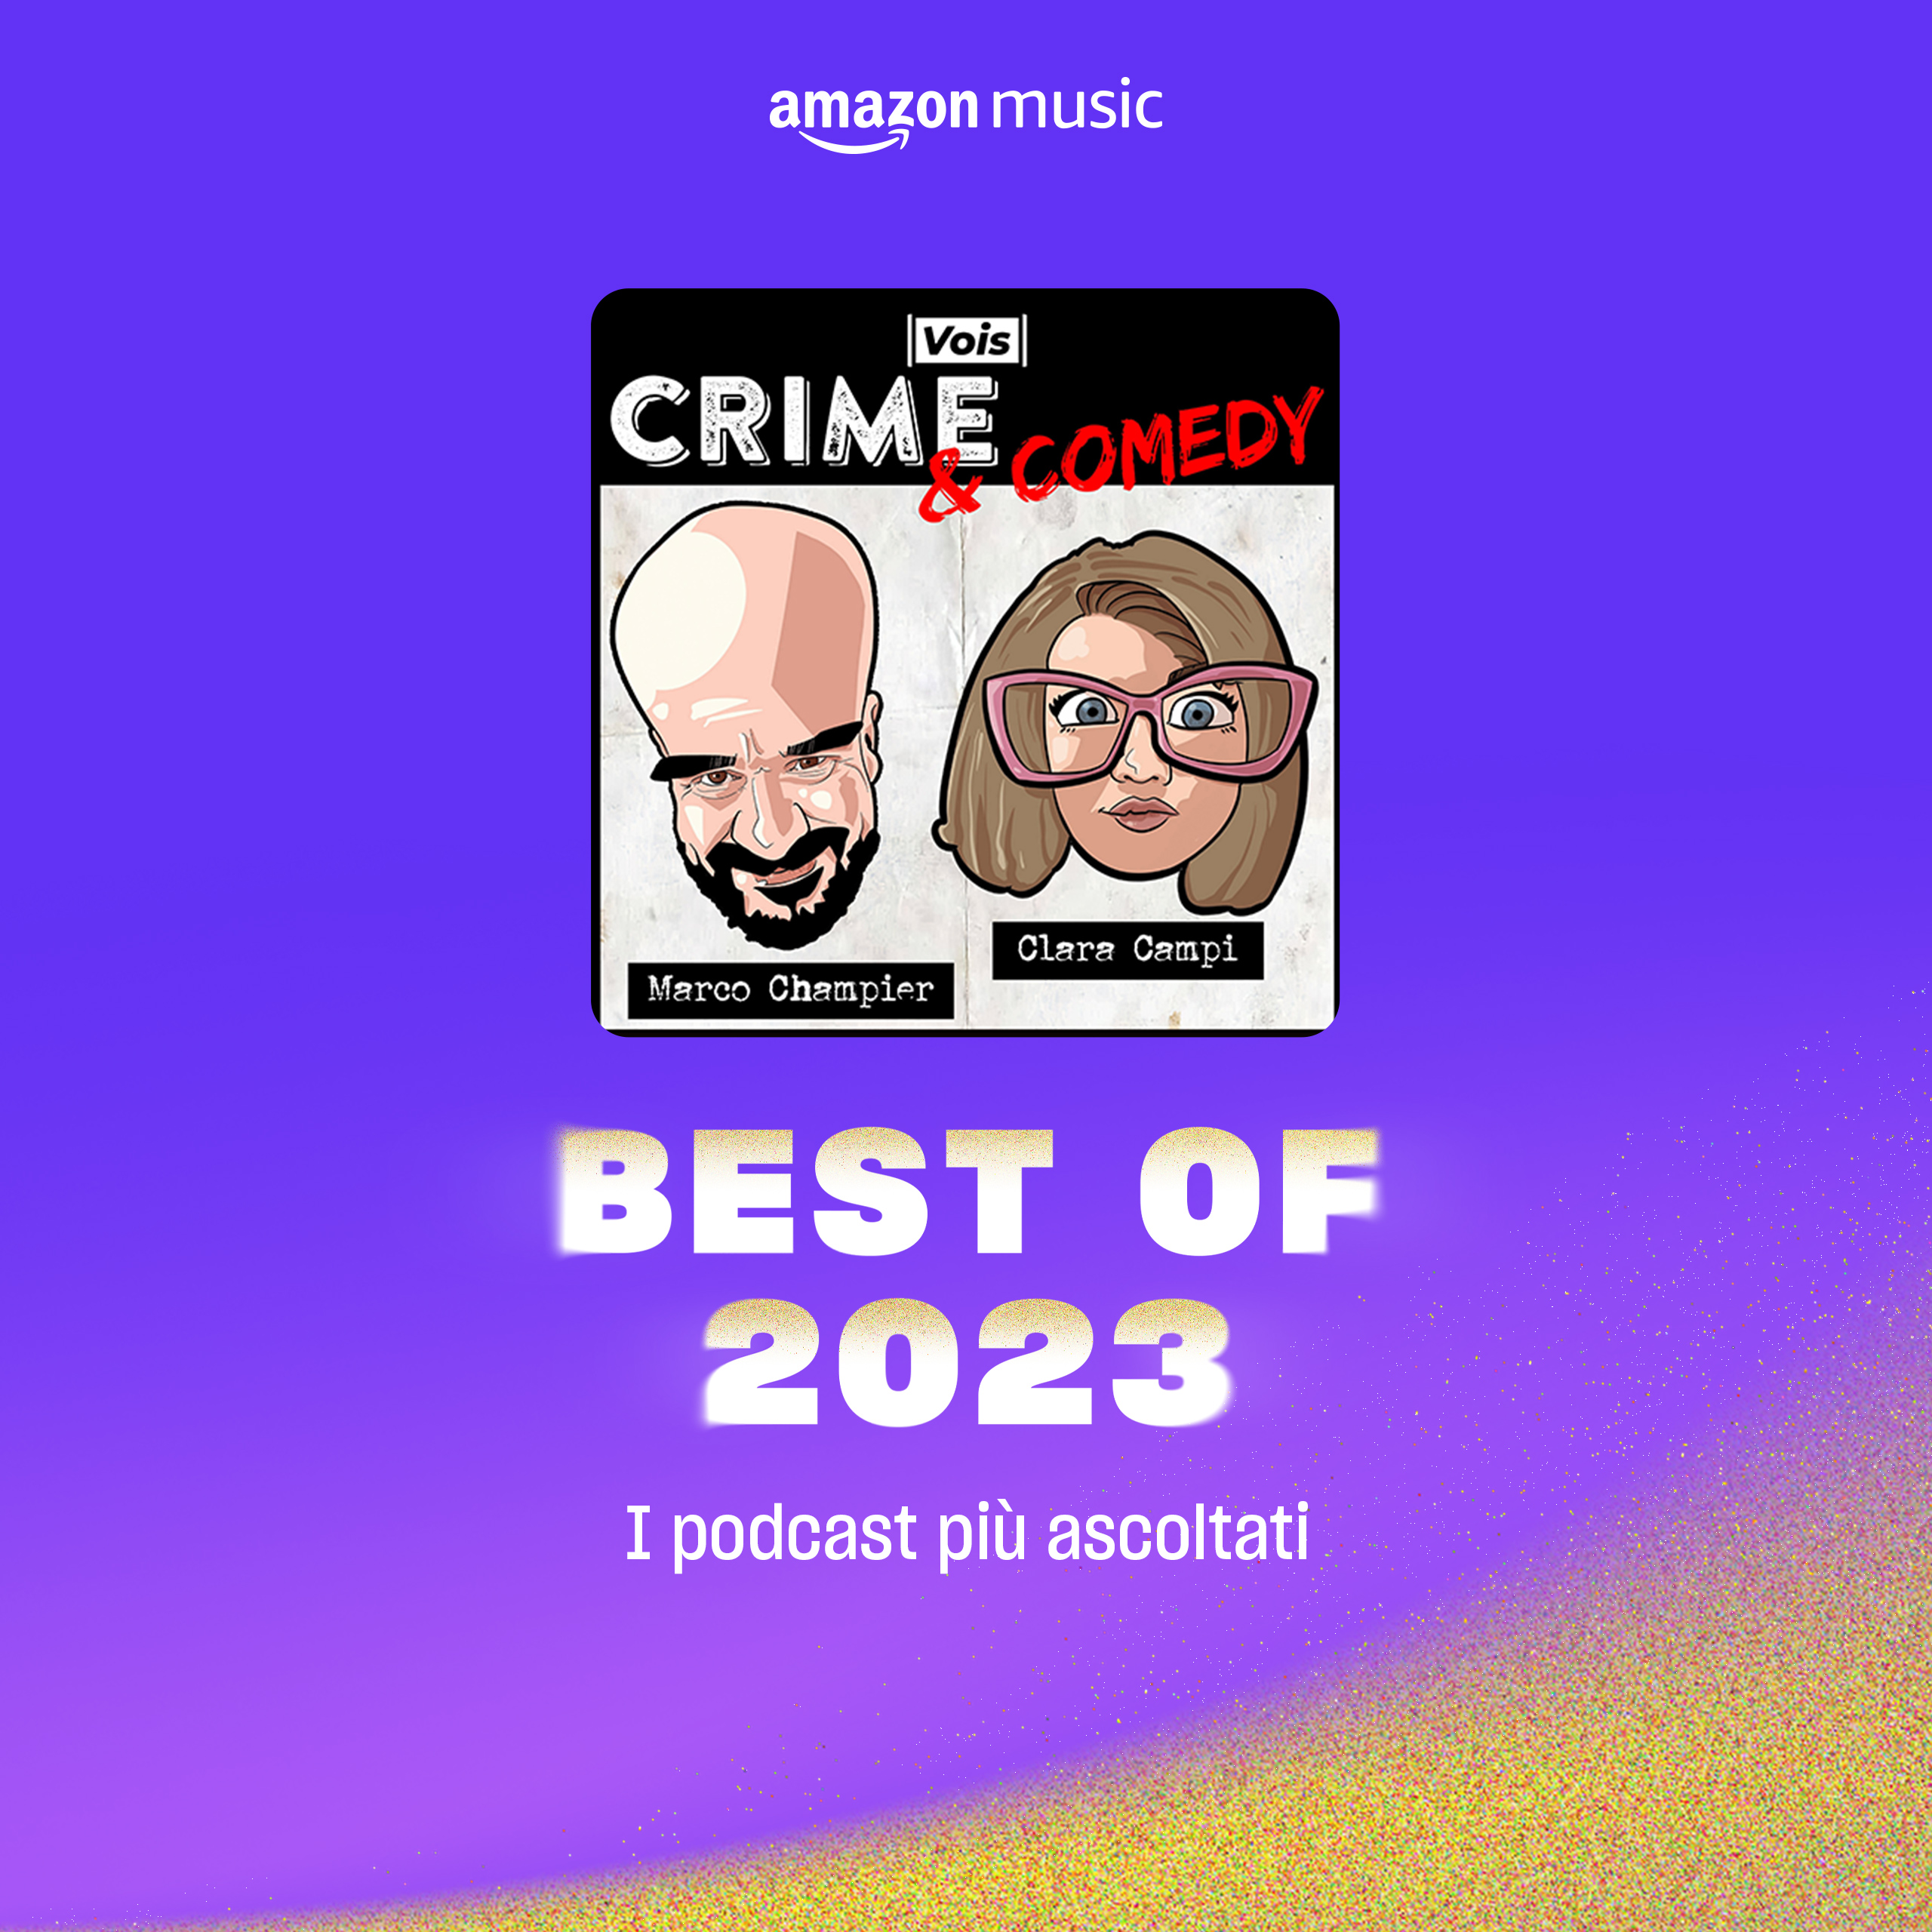 Amazon Music Miglior Podcast 2023 - Crime & Comedy Podcast